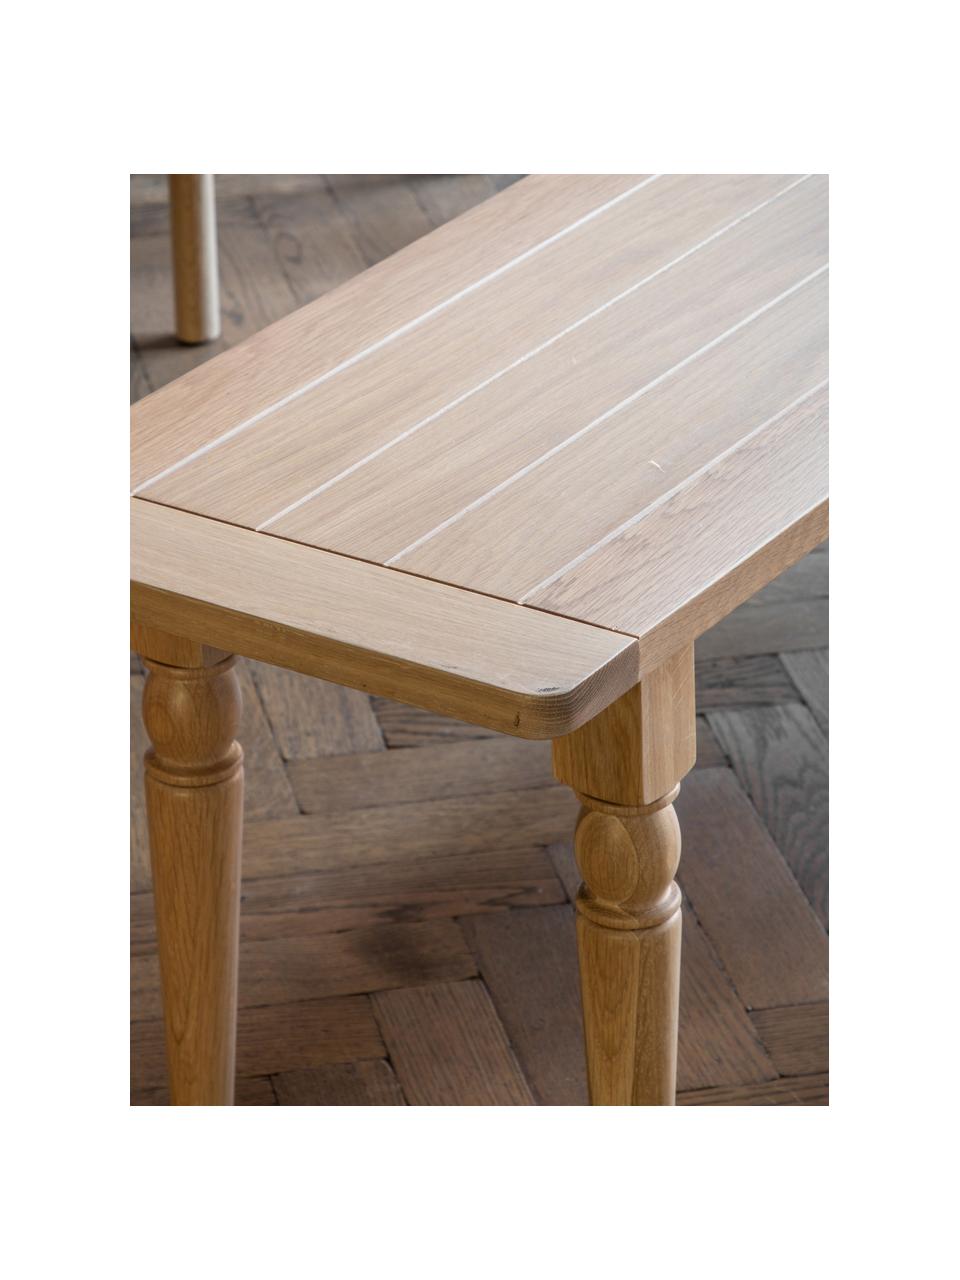 Ręcznie wykonana ławka z drewna Eton, Nogi: drewno dębowe, Drewno naturalne, S 150 x G 38 cm